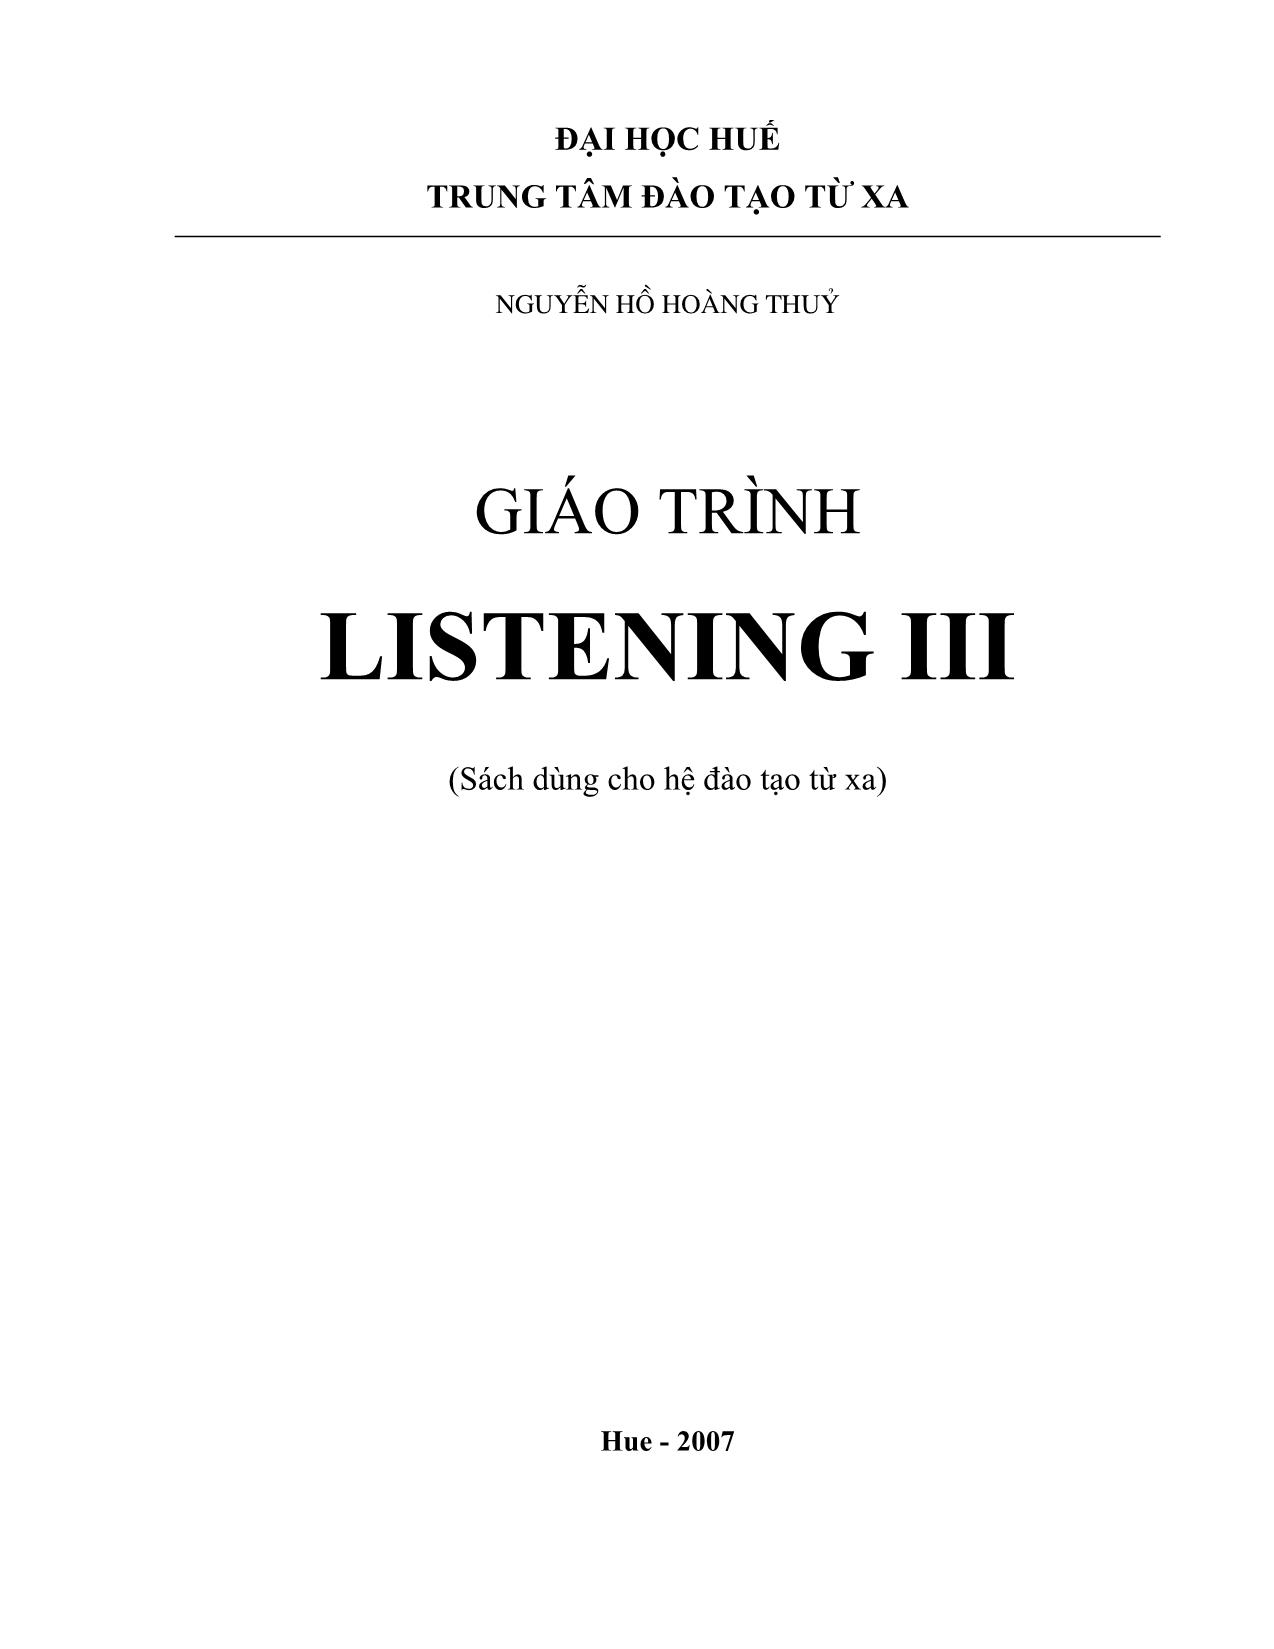 Giáo trình Listening III trang 1